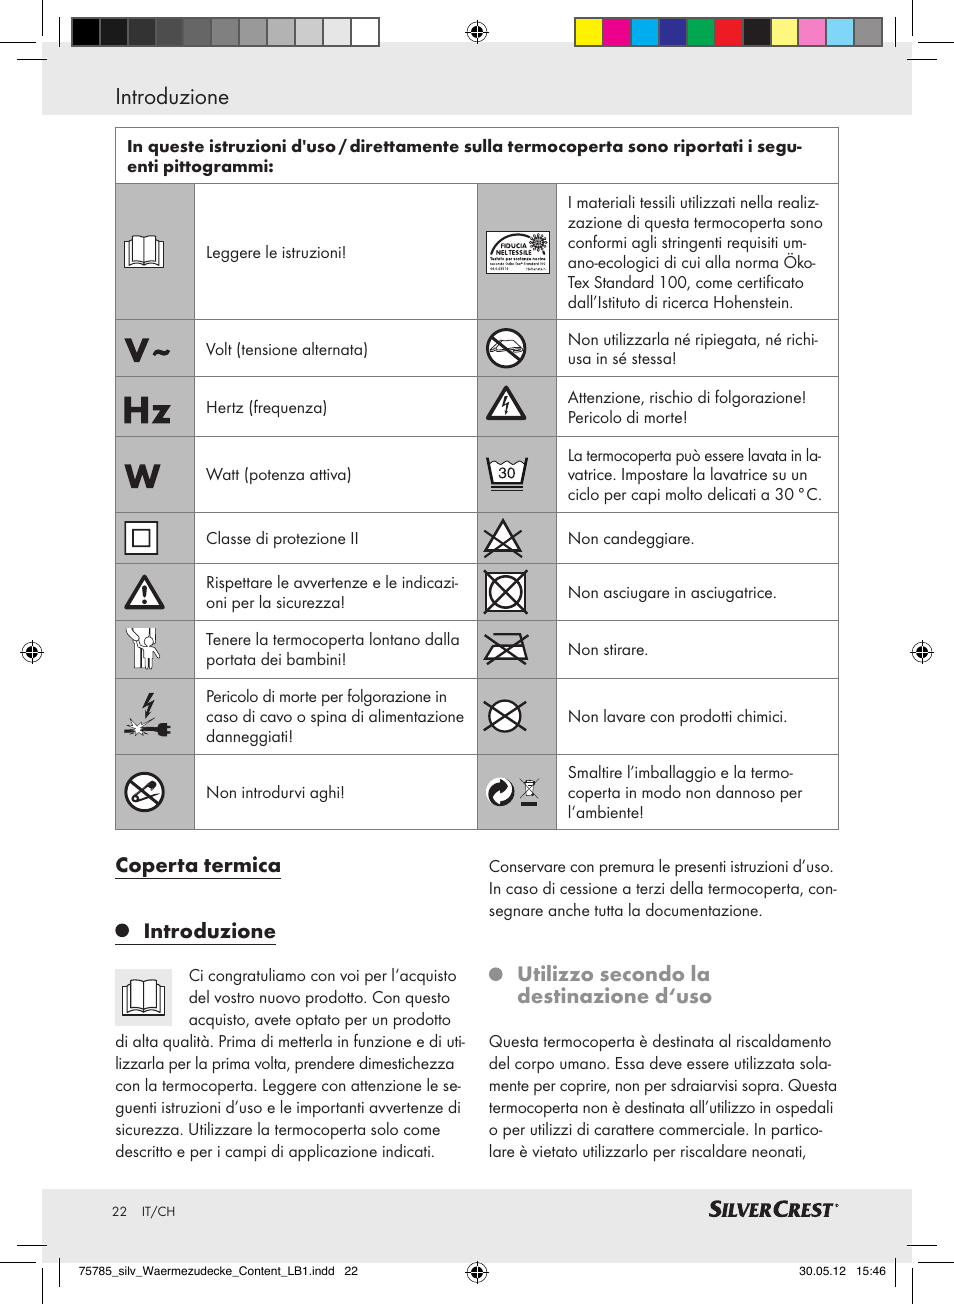 Coperta termica introduzione, Utilizzo secondo la destinazione d'uso |  Silvercrest SWD 100 A2 User Manual | Page 22 / 44 | Original mode